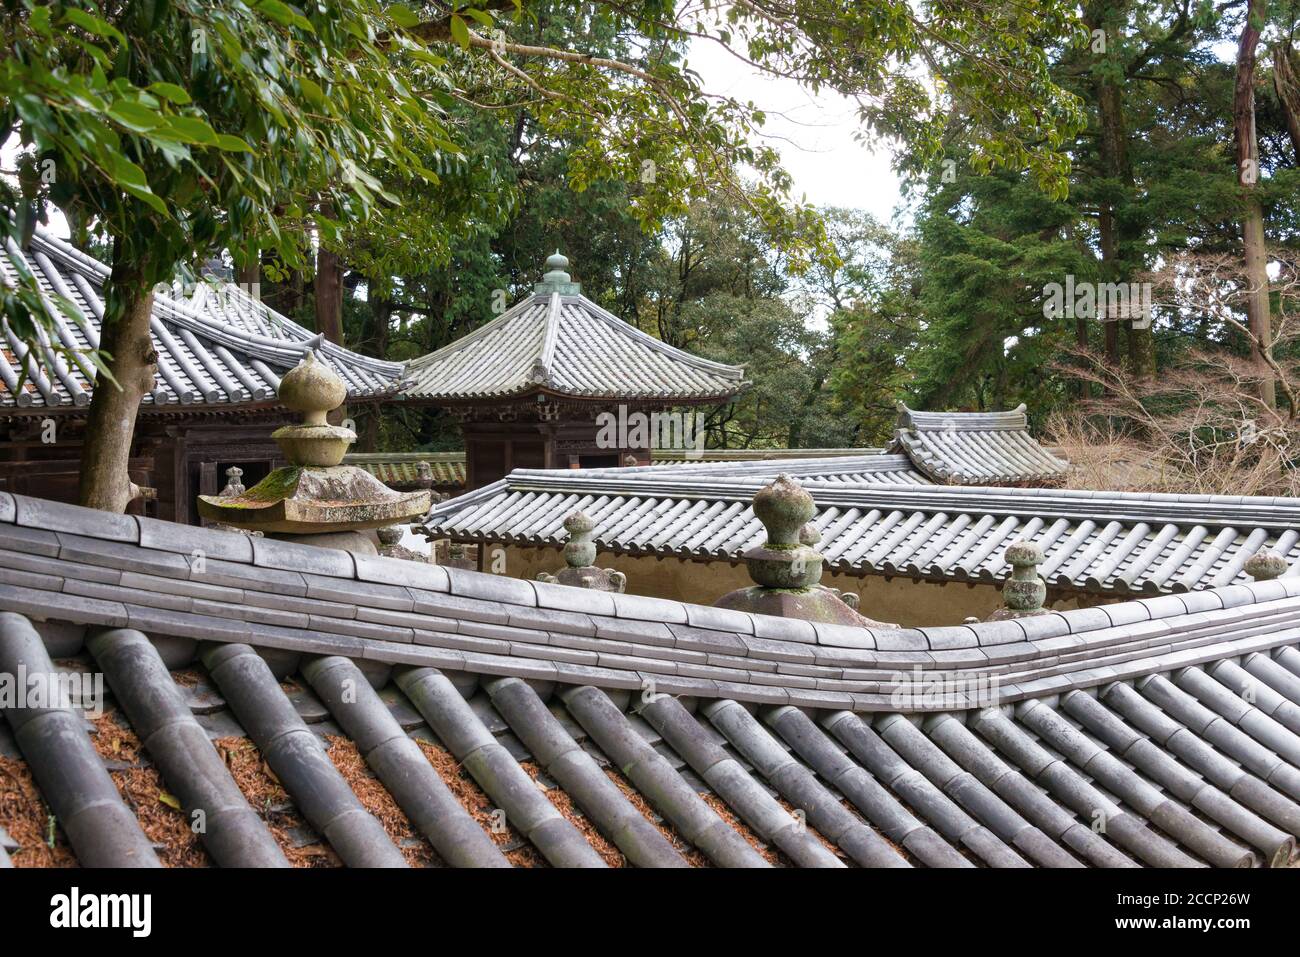 Hyogo, Giappone - il tempio di Engyoji a Himeji, Hyogo, Giappone. Il tempio fu originariamente costruito nel 966. Foto Stock